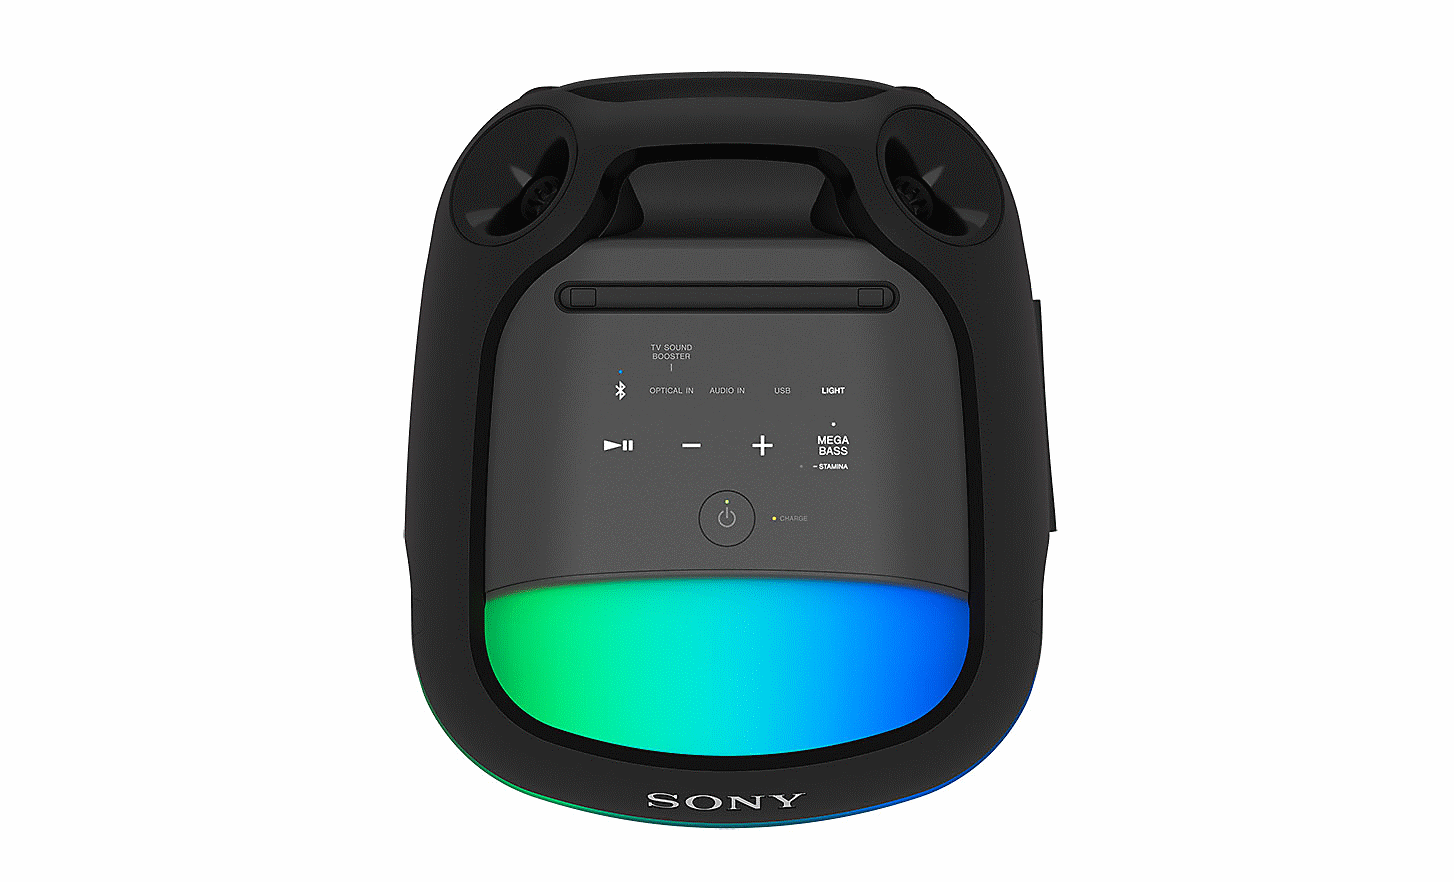 Slika nadzorne plošče SRS-XV800 z od zadaj osvetljenimi gumbi ter zeleno in modro osvetlitvijo ozadja na belem ozadju